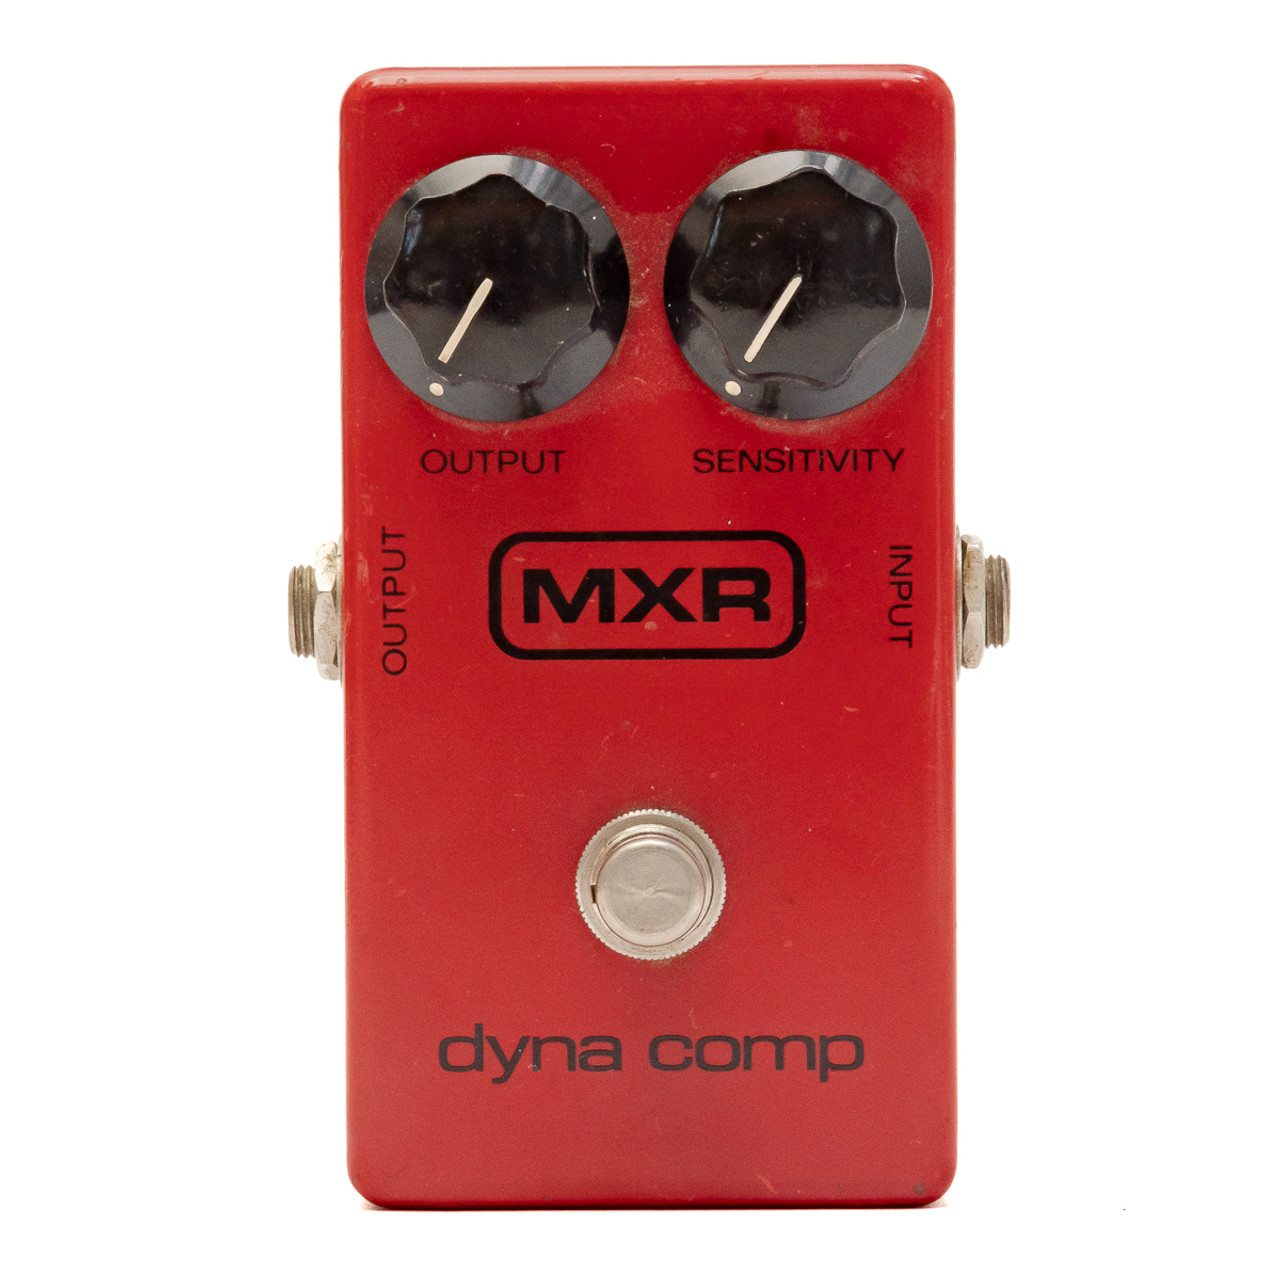 MXR - 1980 Dyna Comp - Vintage Compressor Pedal - x5797 (USED)